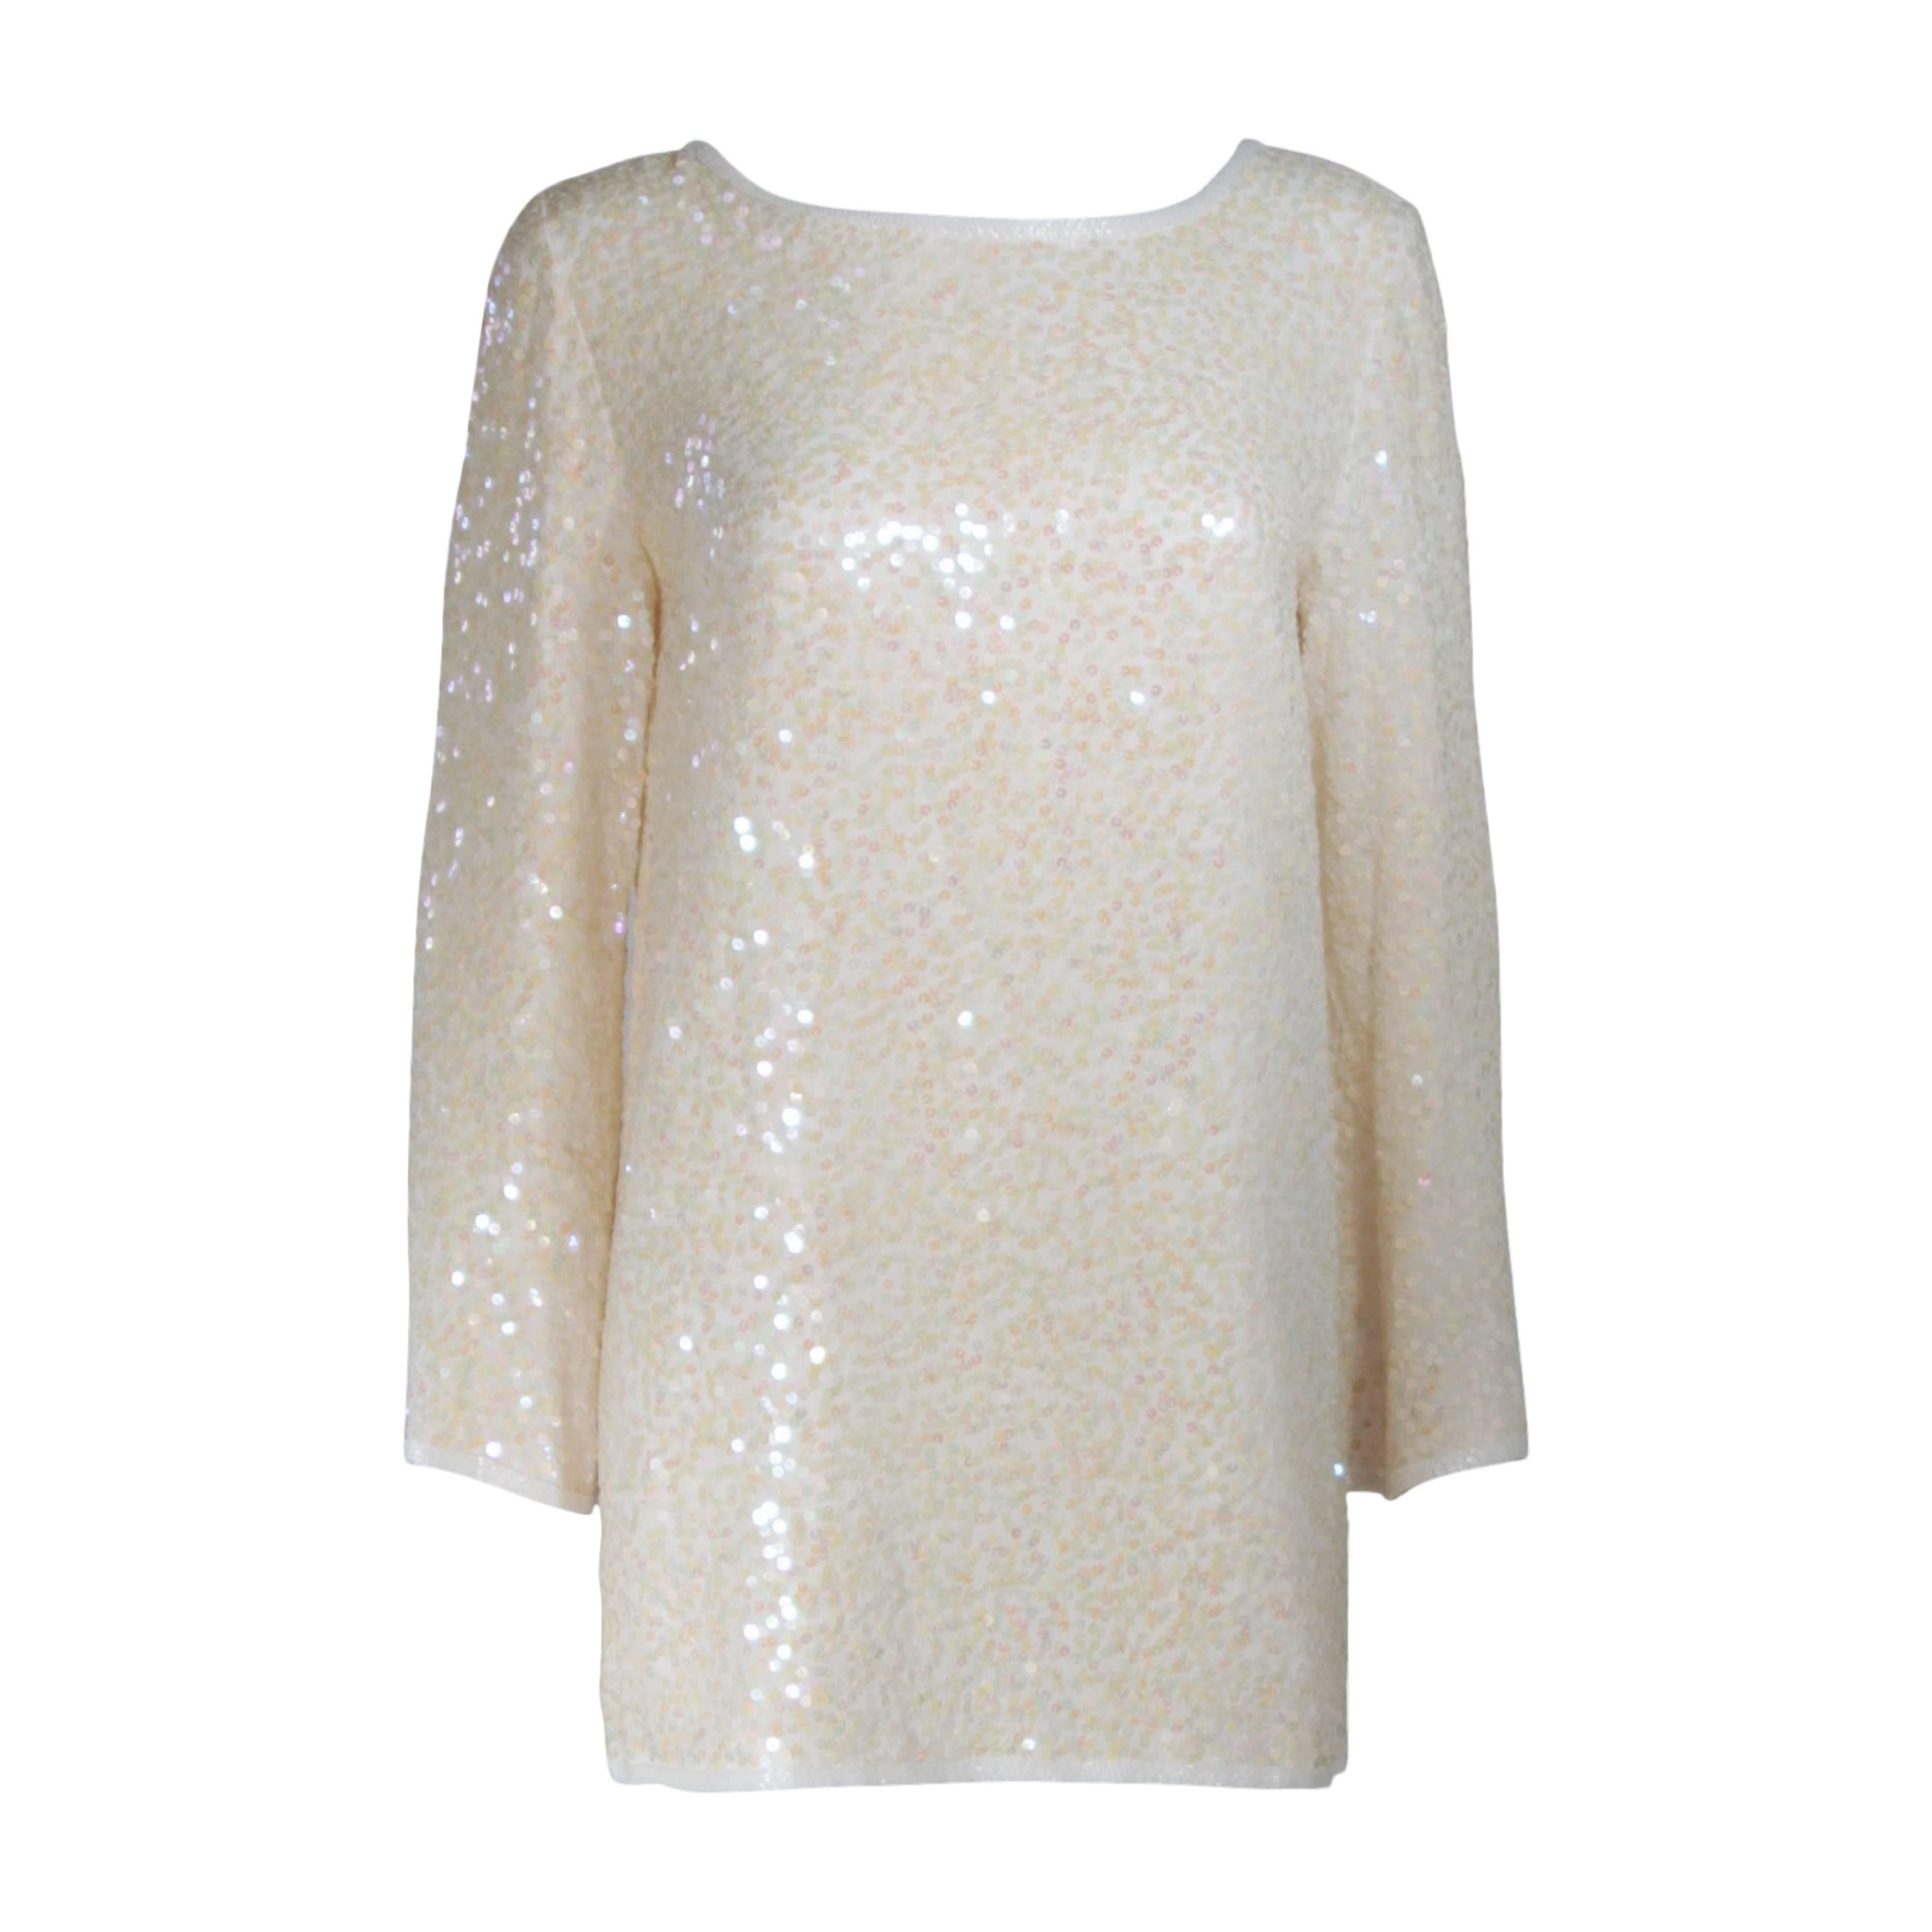 OLEG CASSINI Off White Silk Iridescent Sequin Embellished Tunic Size 6